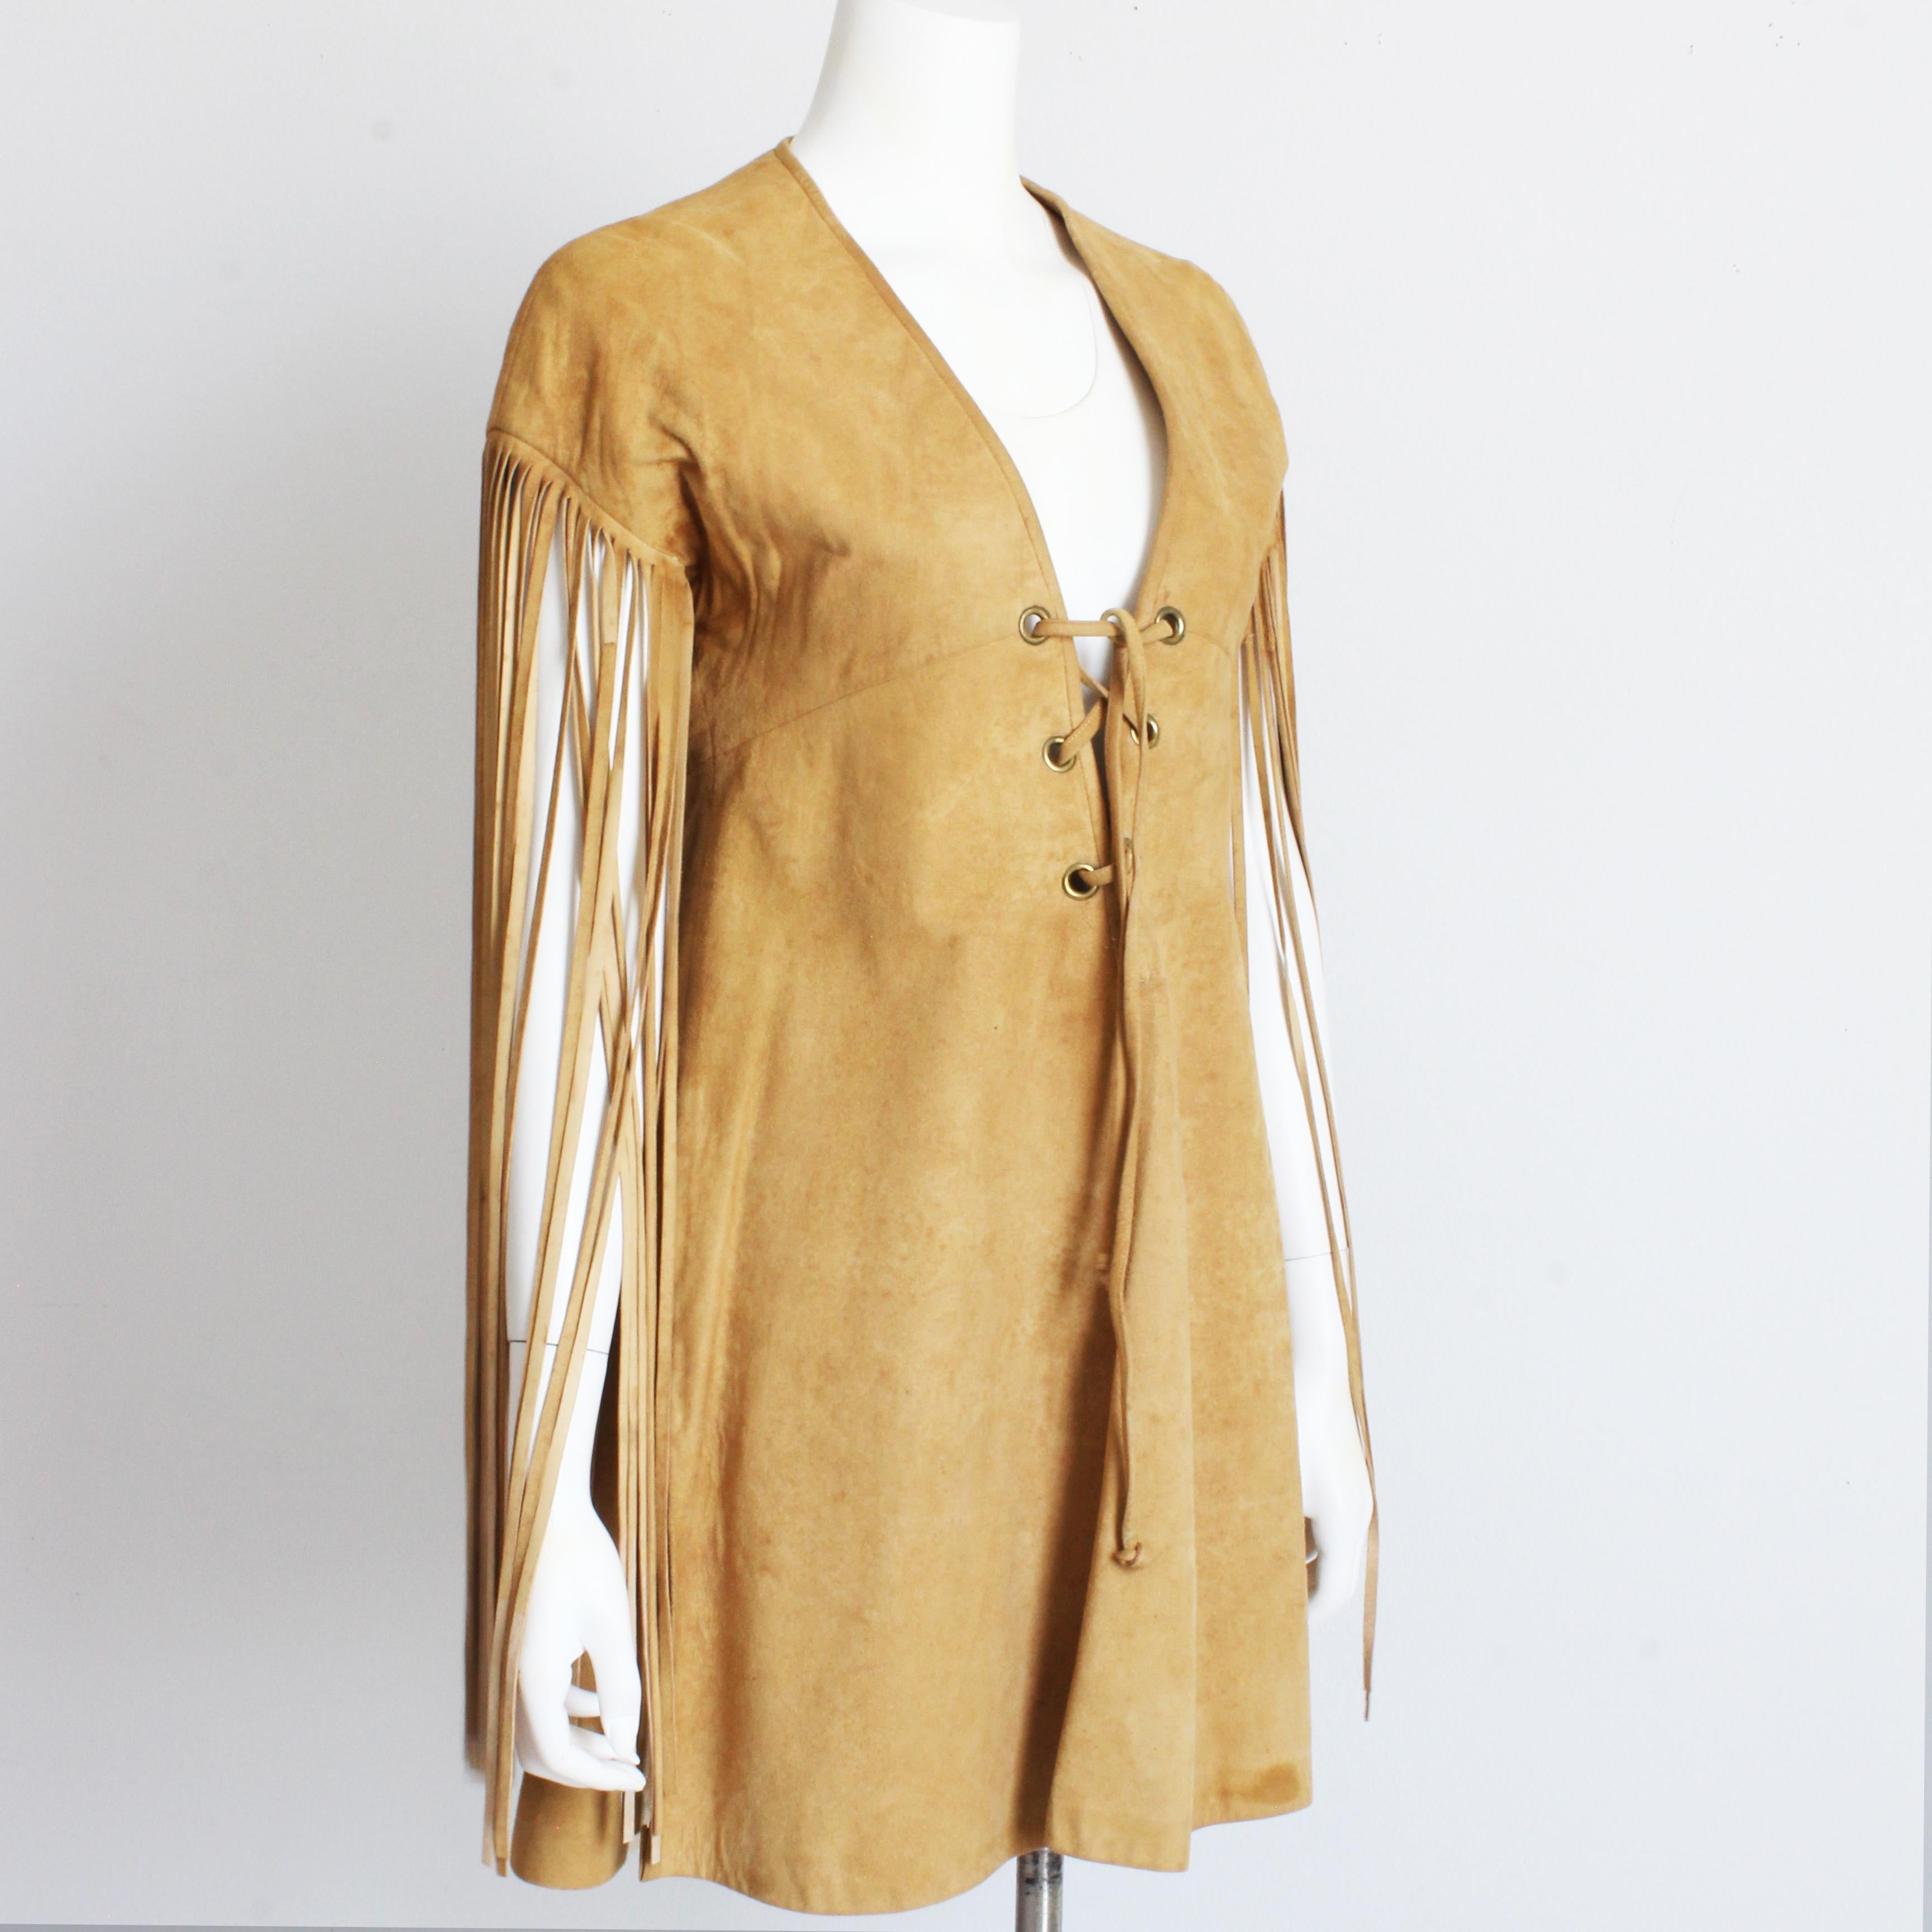 Fabuleuse robe-tunique en peau de chamois avec franges, Bonnie Cashin for Sills, probablement réalisée au début des années 60.  Une licorne !

Un modèle similaire peut être observé dans le croquis de mode de Bonnie Calle intitulé 